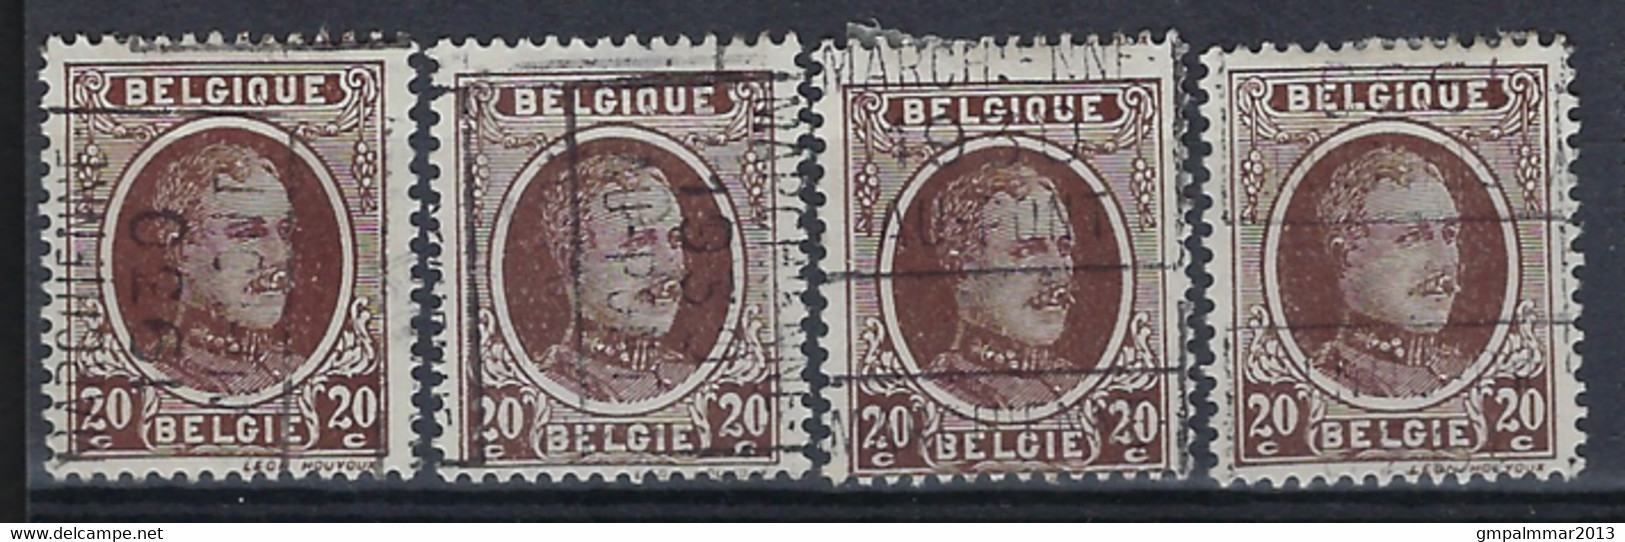 Houyoux Nr. 196 Voorafgestempeld Nr. 5509 A + B + C + D   MARCHIENNE - AU - PONT 1930 ; Staat Zie Scan ! - Rolstempels 1930-..